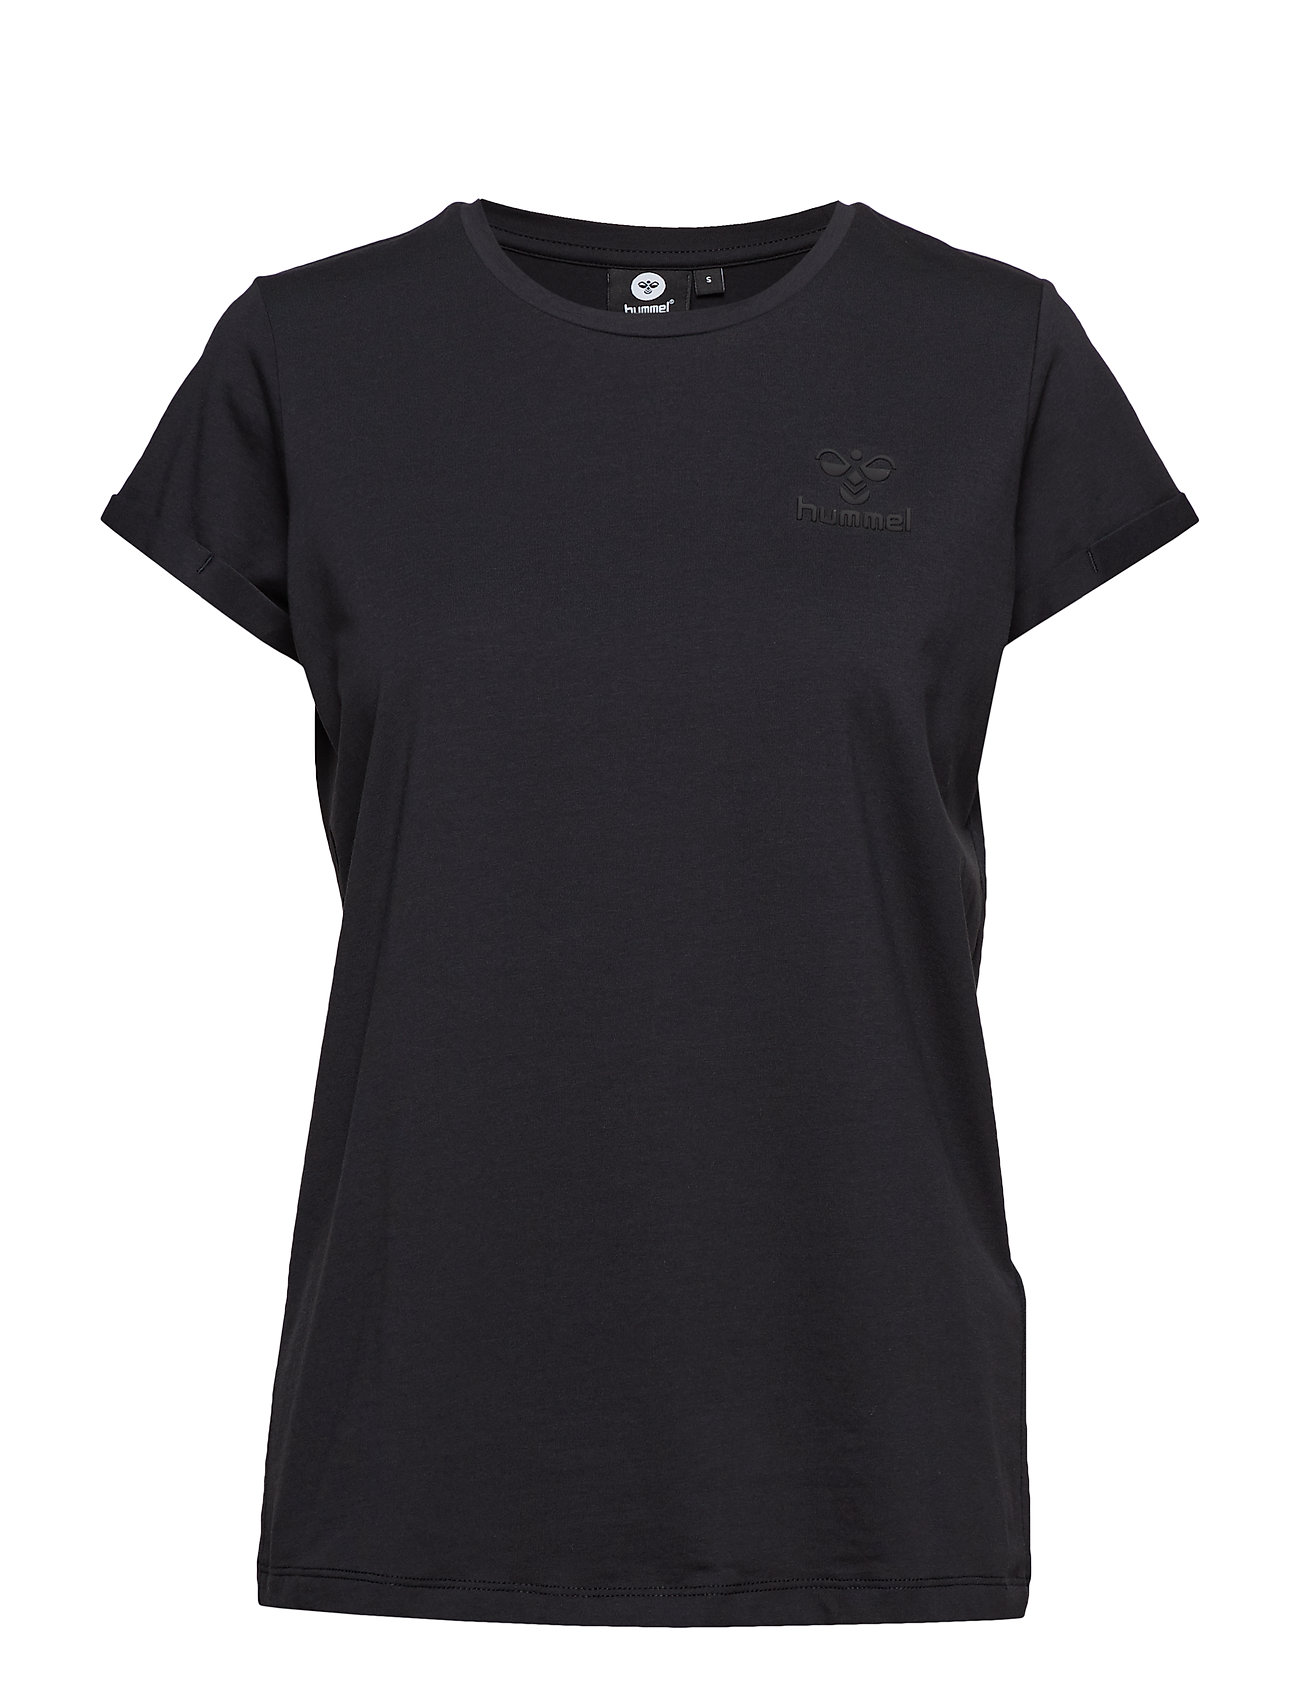 Hmlisobella T-Shirt S/S T-shirts & Tops Short-sleeved Musta Hummel